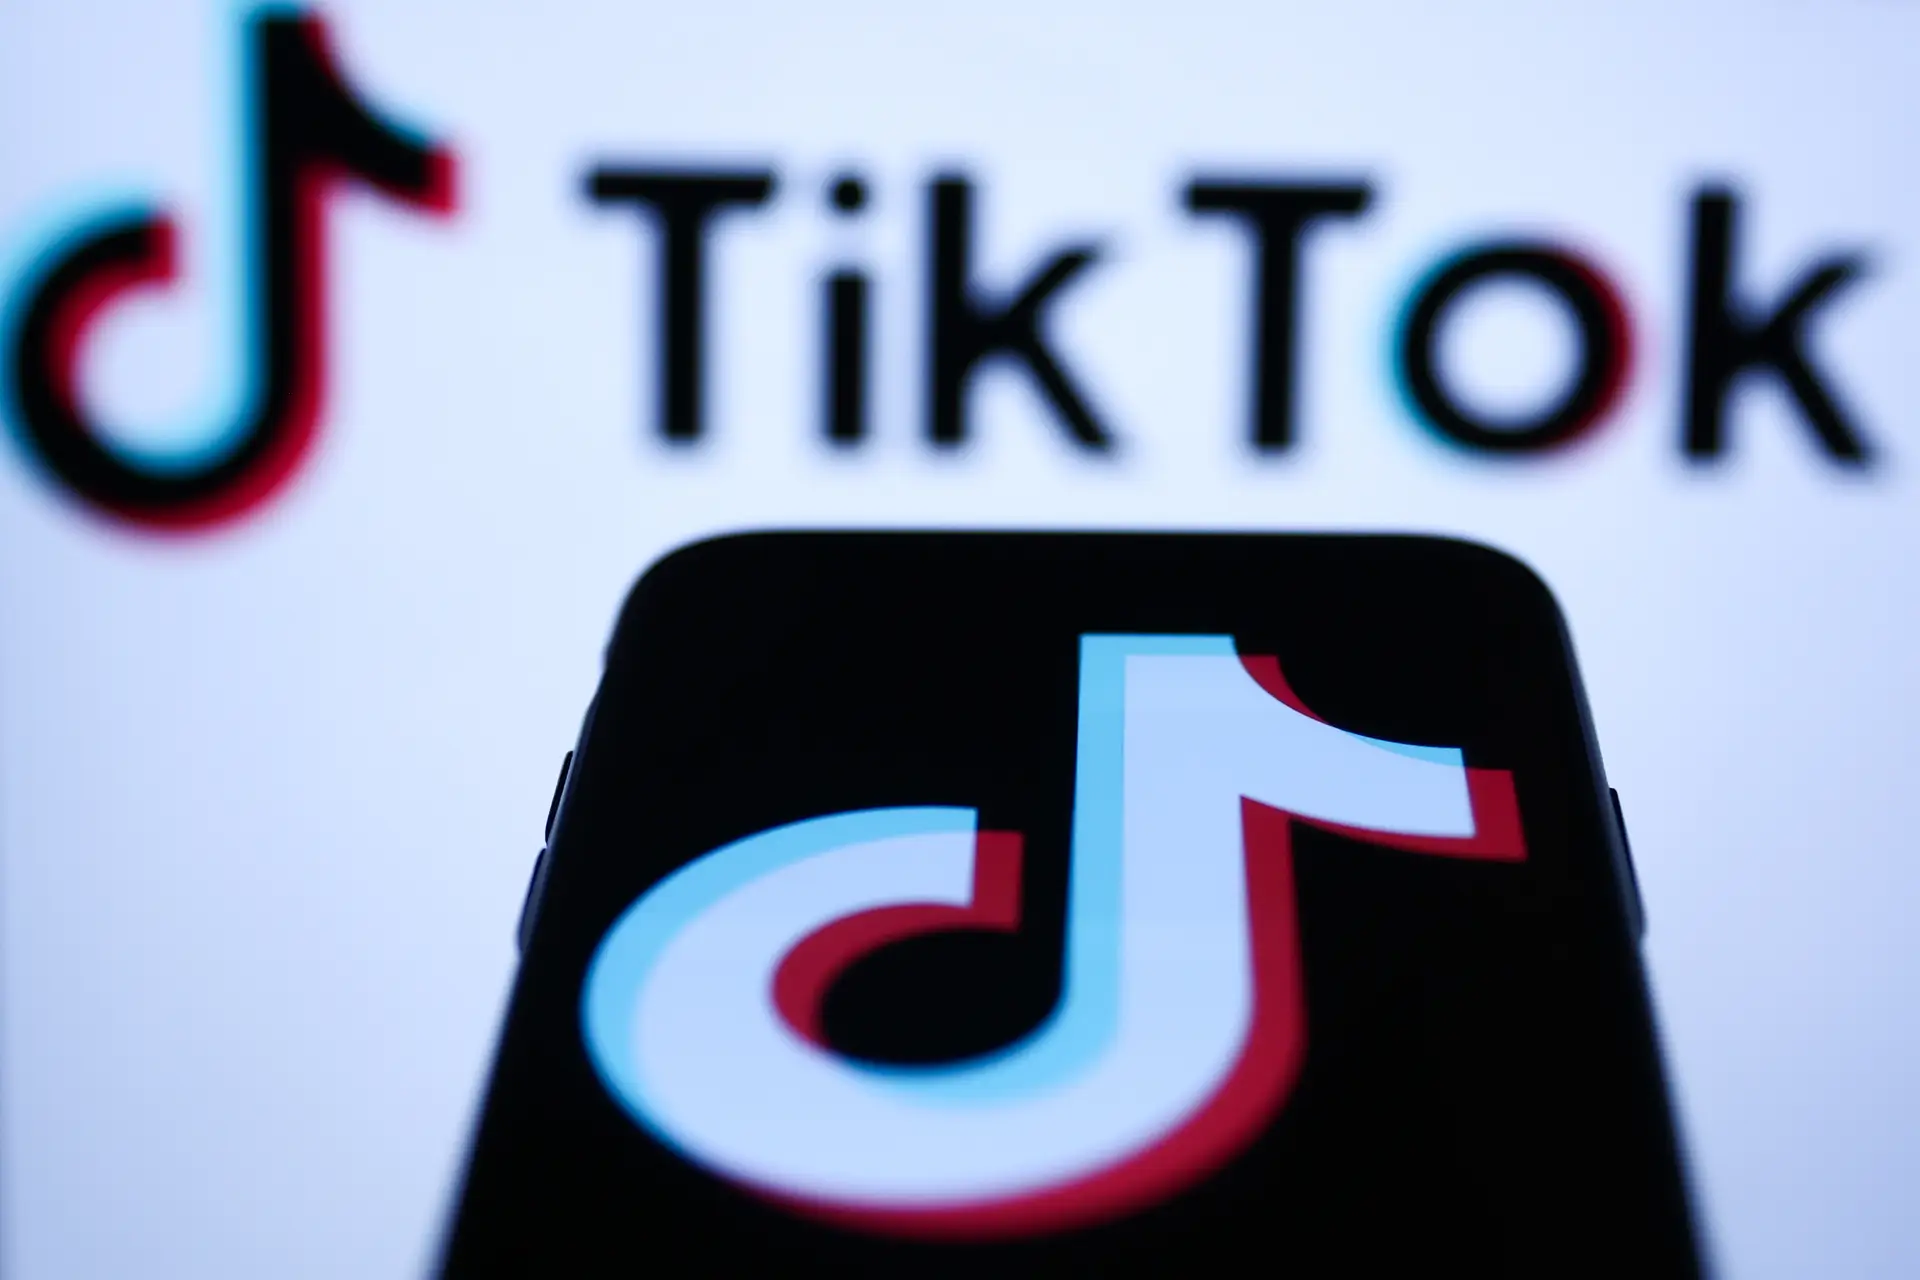 Centro Nacional de Cibersegurança "tem vindo a acompanhar" desenvolvimentos sobre uso do TikTok